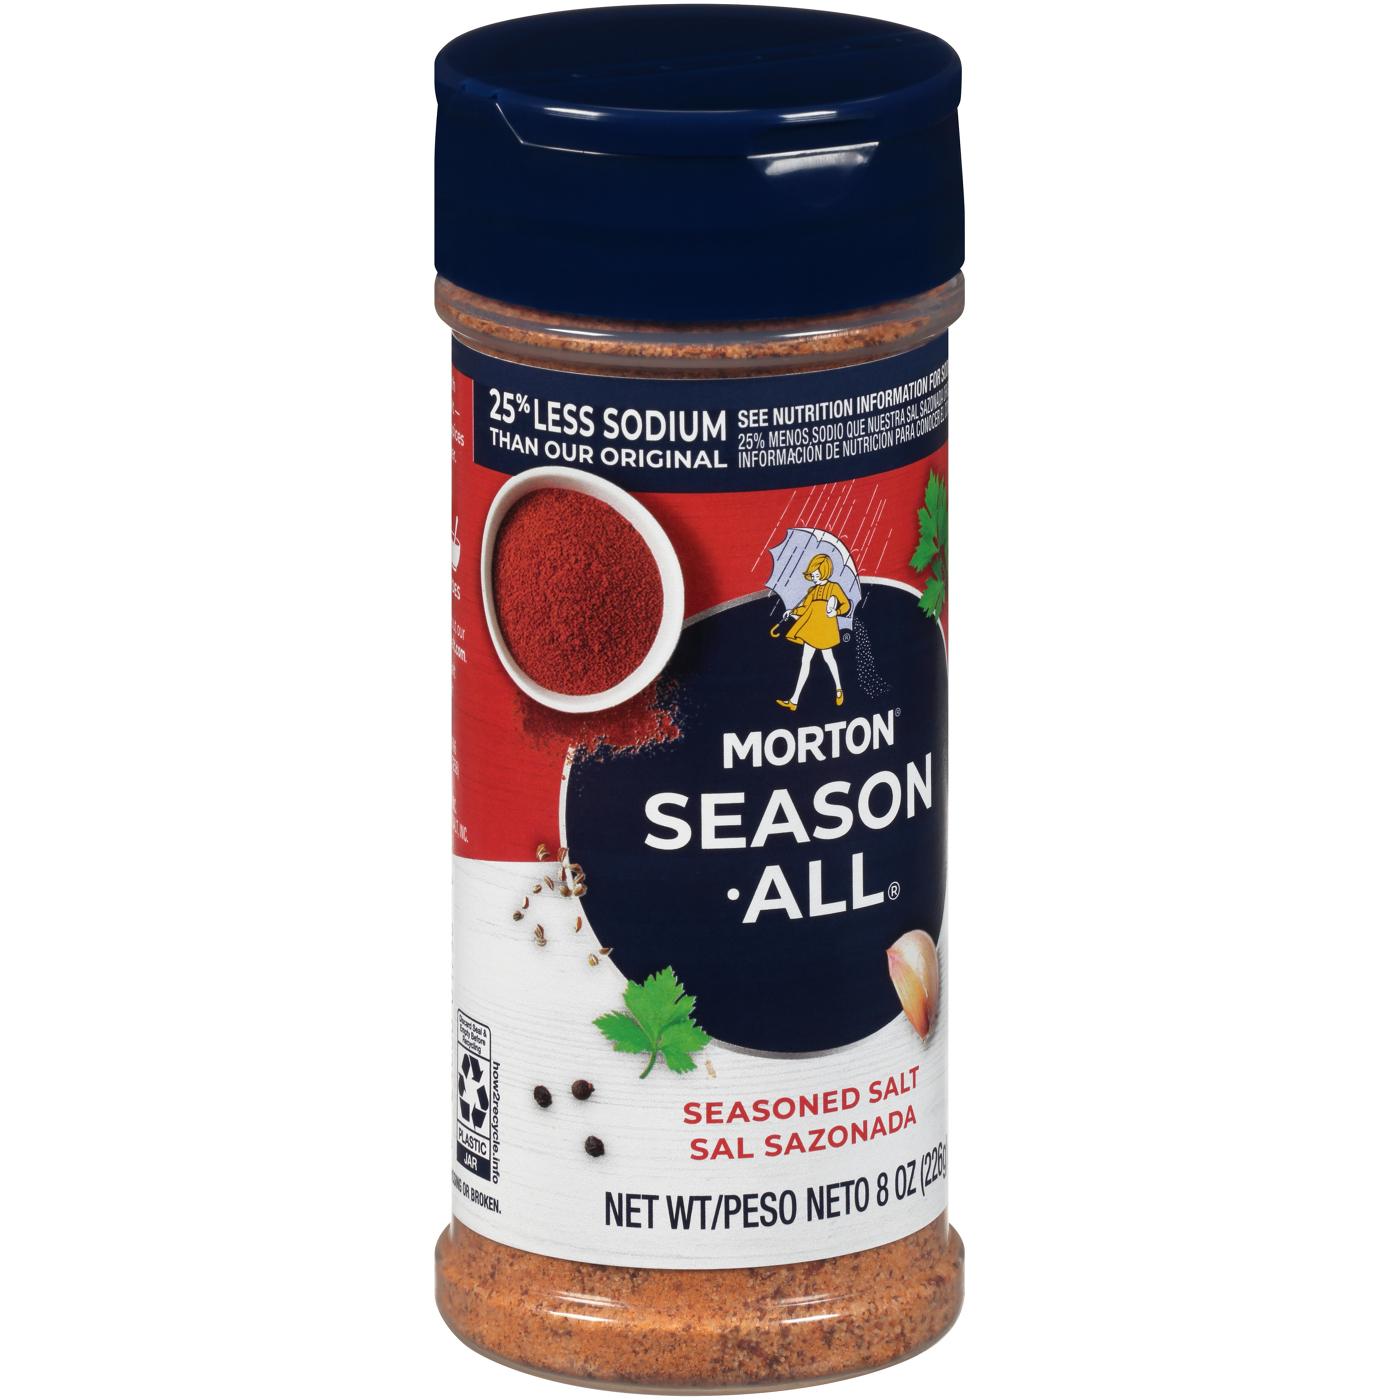 Morton Salt Nature's Seasons Seasoning Blend, 25% Less Sodium, 7.5 oz